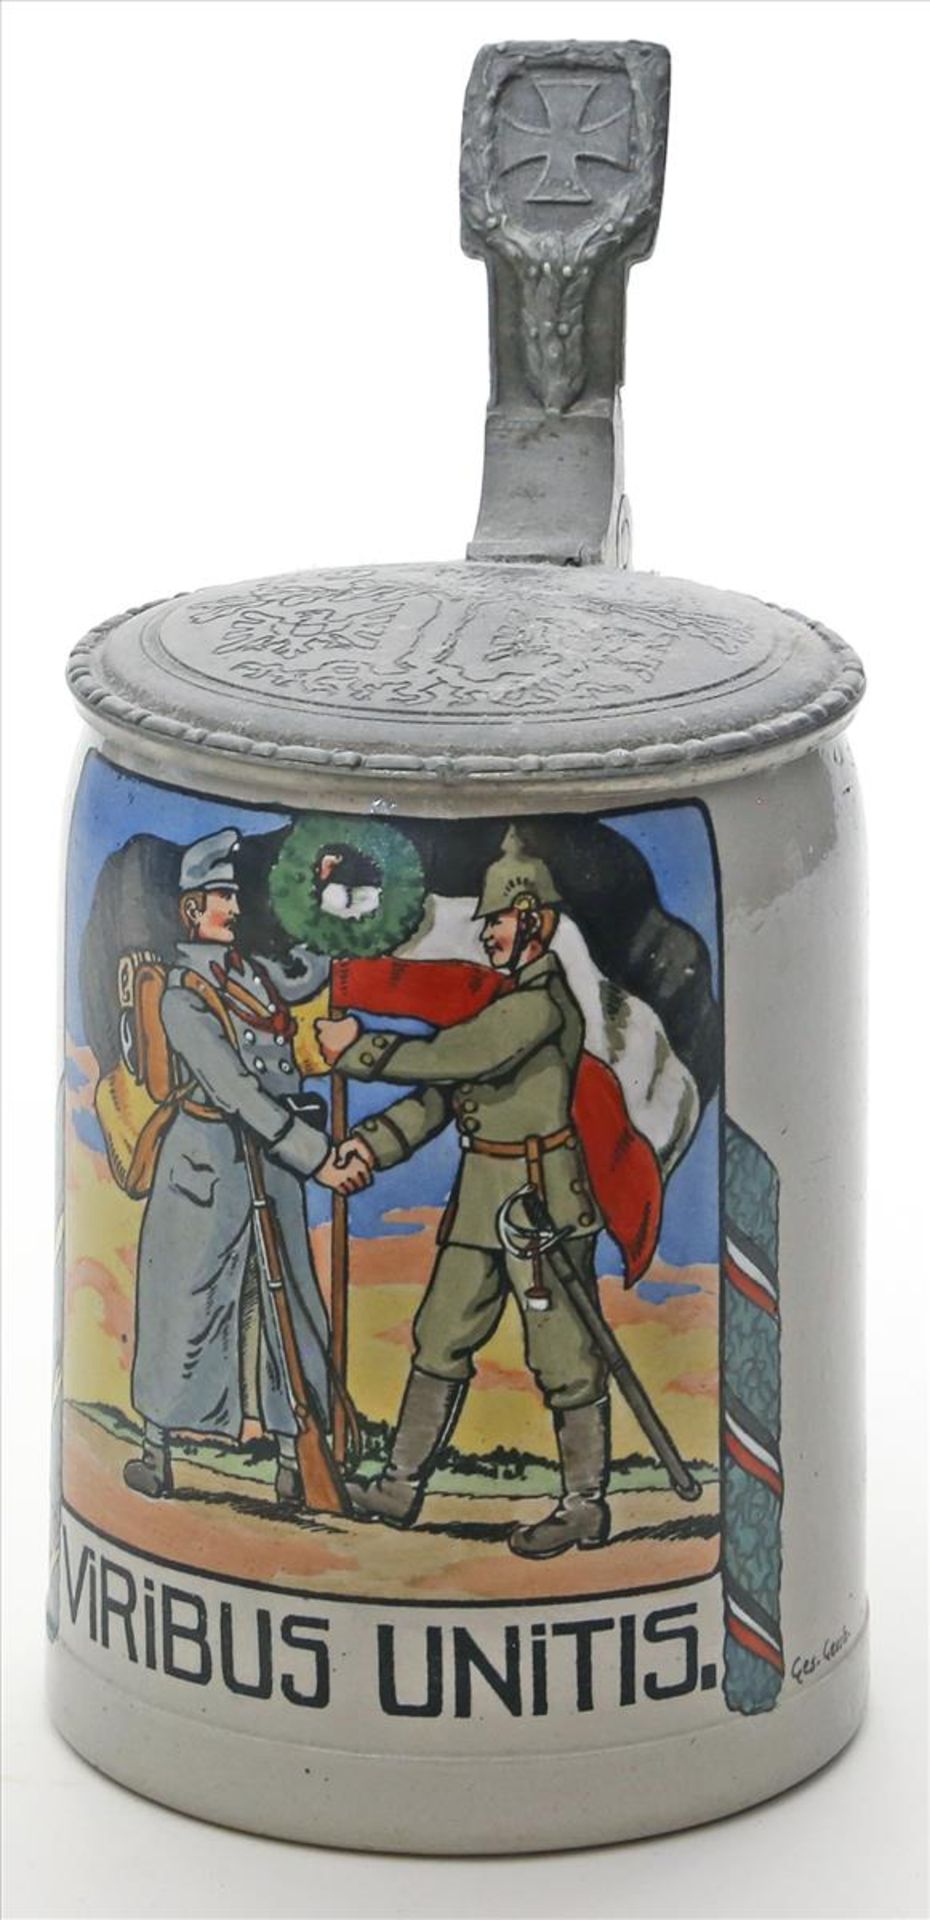 Patriotistischer Bierkrug, 1. WK.Steinzeug. Schauseitig mit farbiger Darstellung von 2 Soldaten "